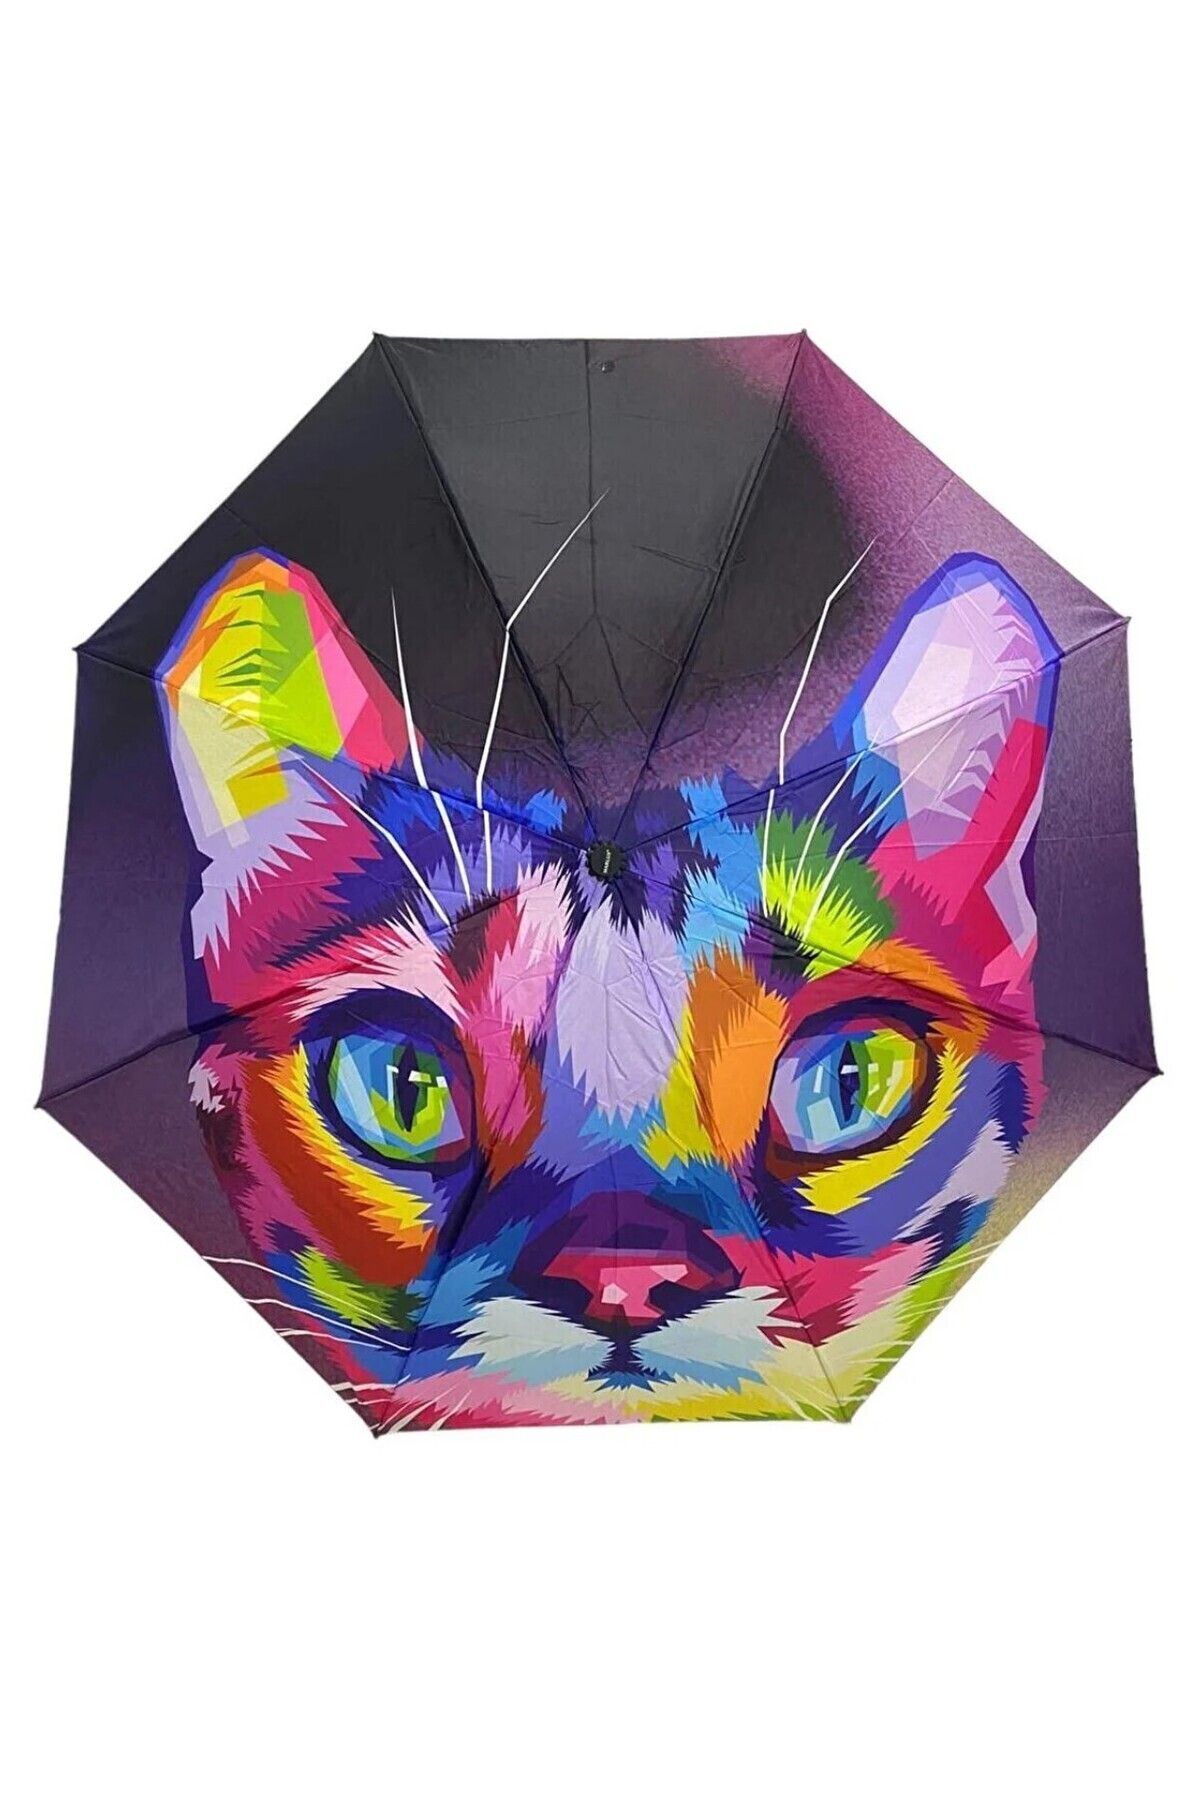 esdekor Kedi Kafa Desenli Şemsiye Kadın Aksesuar Manuel Katlamalı Kumaş Çok Renkli Rengarenk 1 Adet